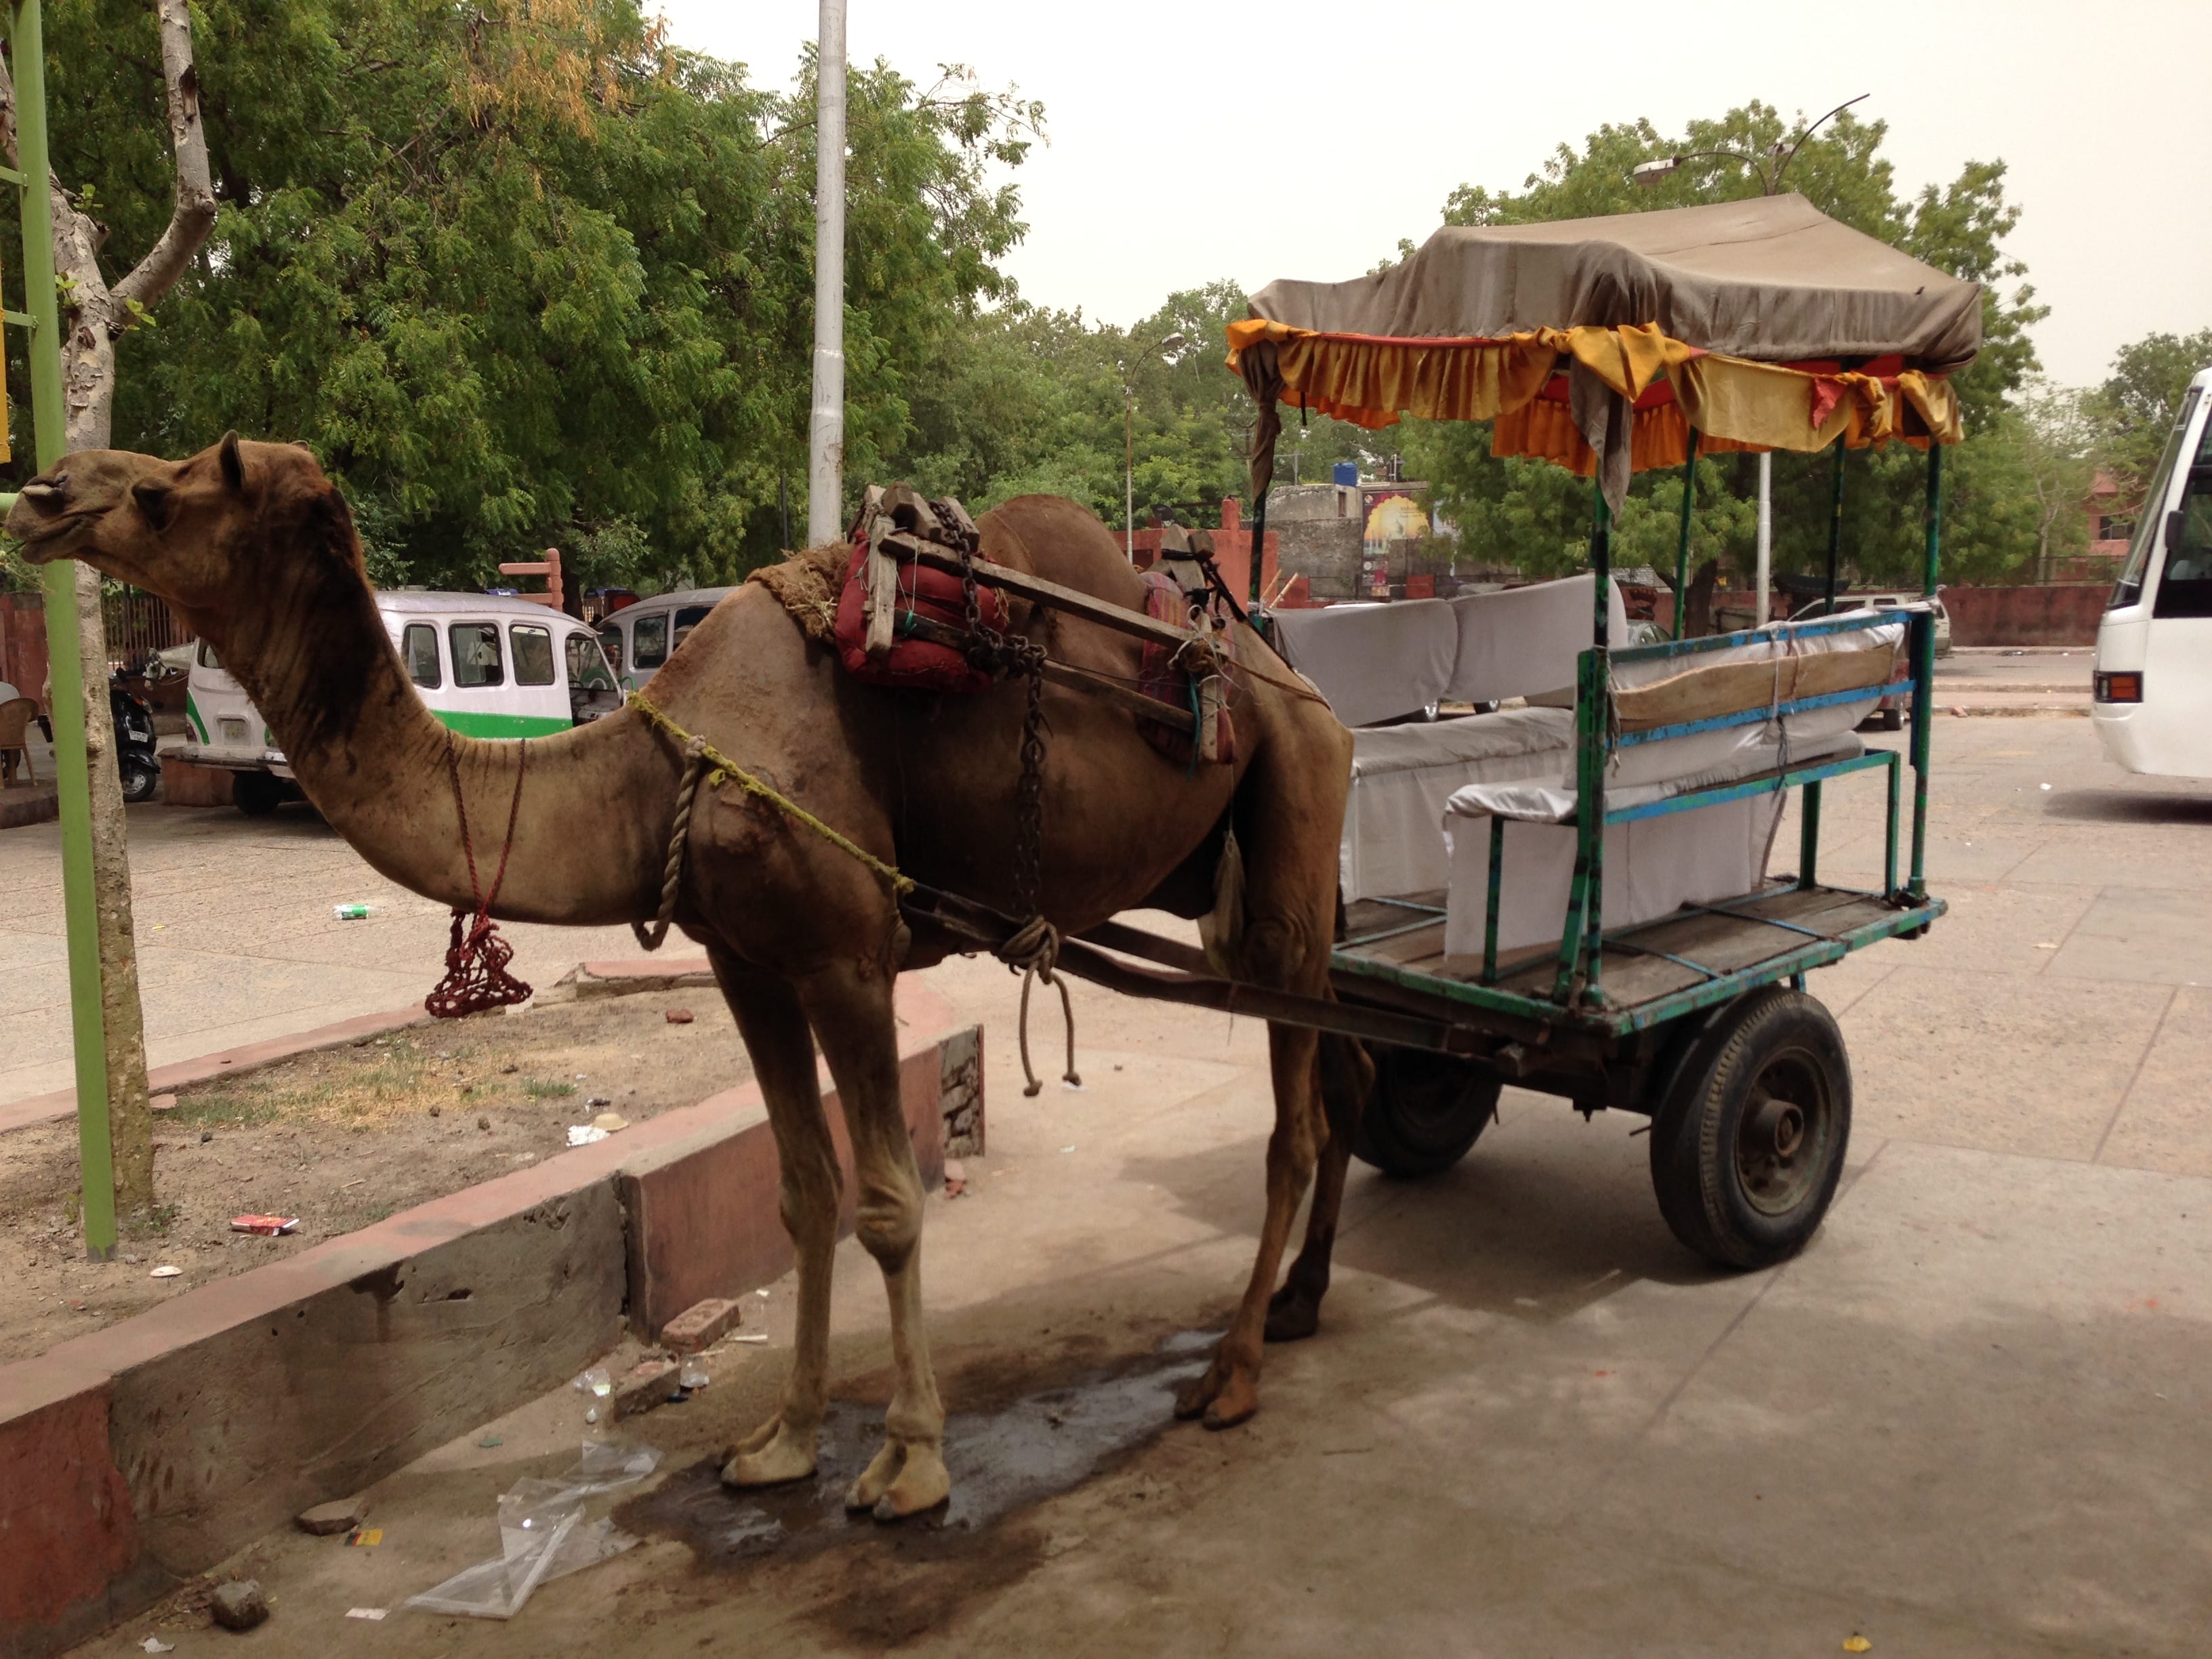 Camel transportation